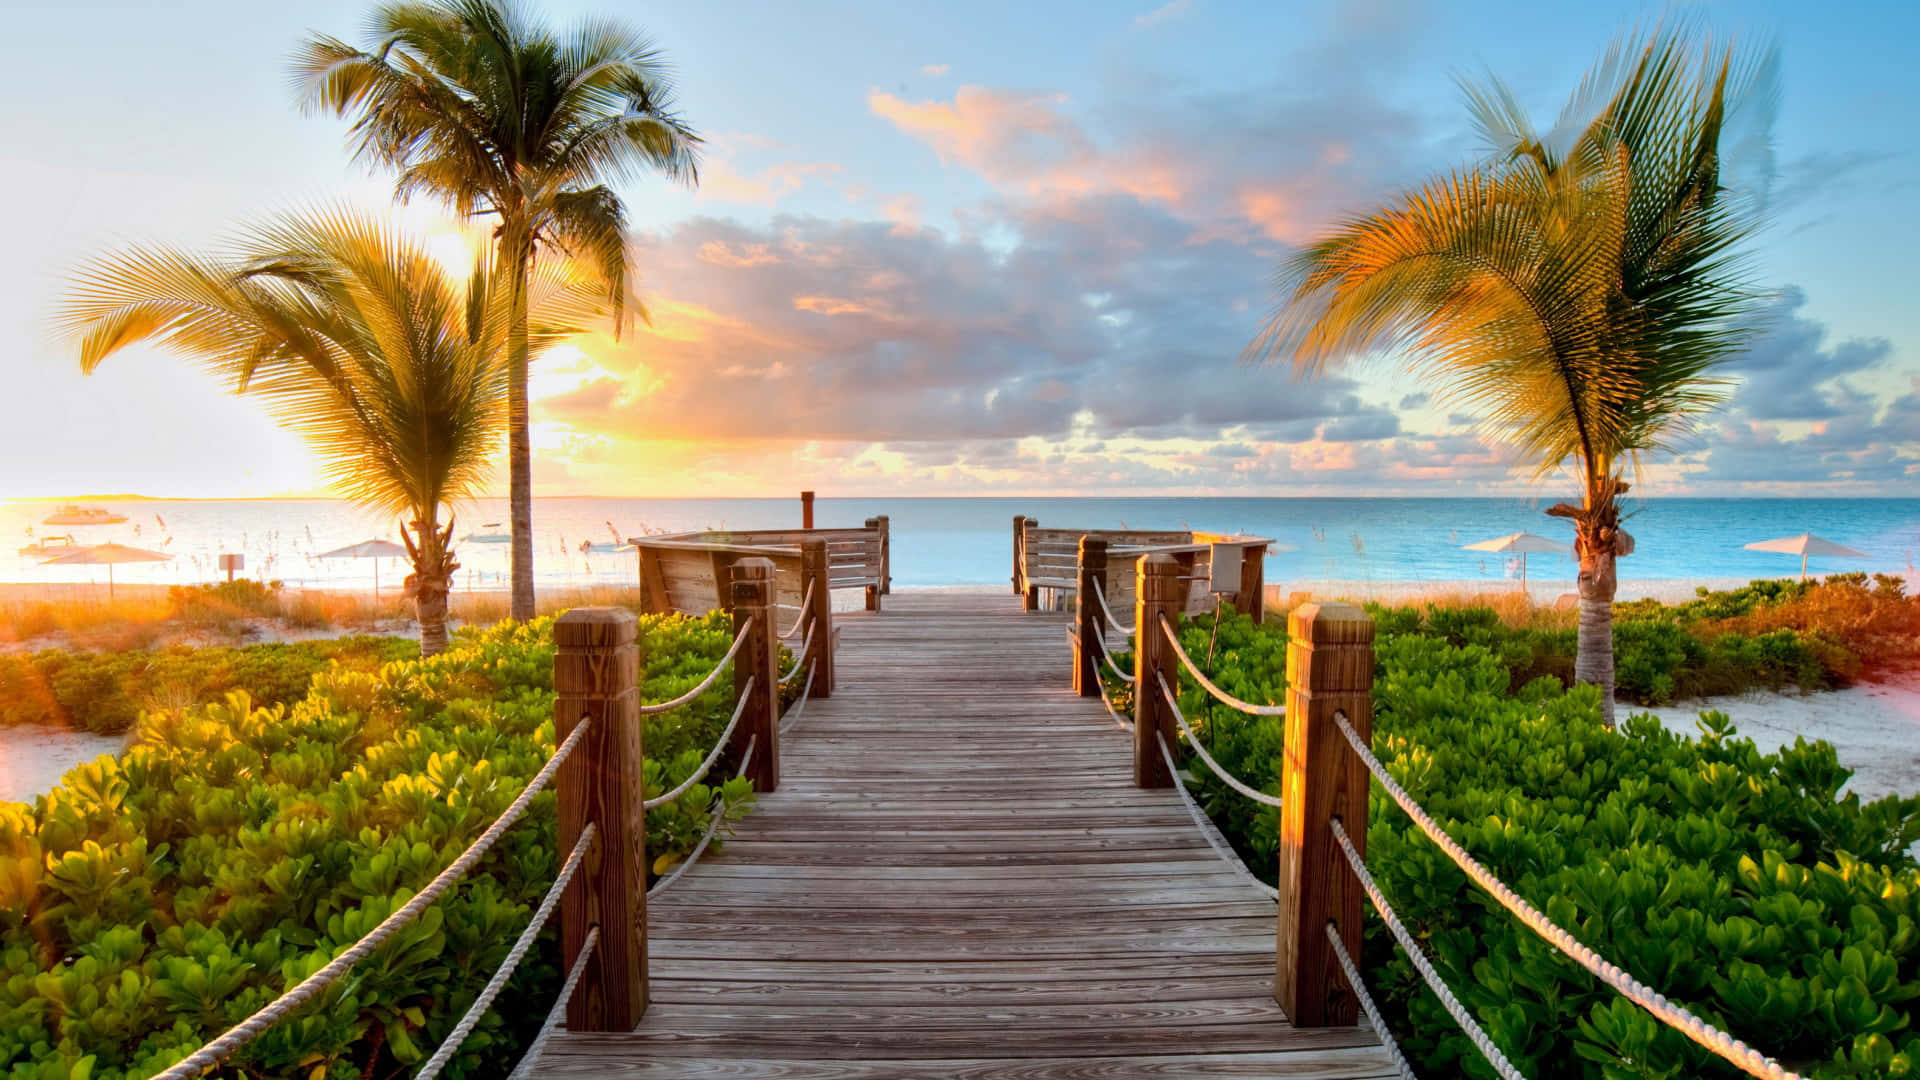 Palm Trees Beach Boardwalk Sunset View Wallpaper